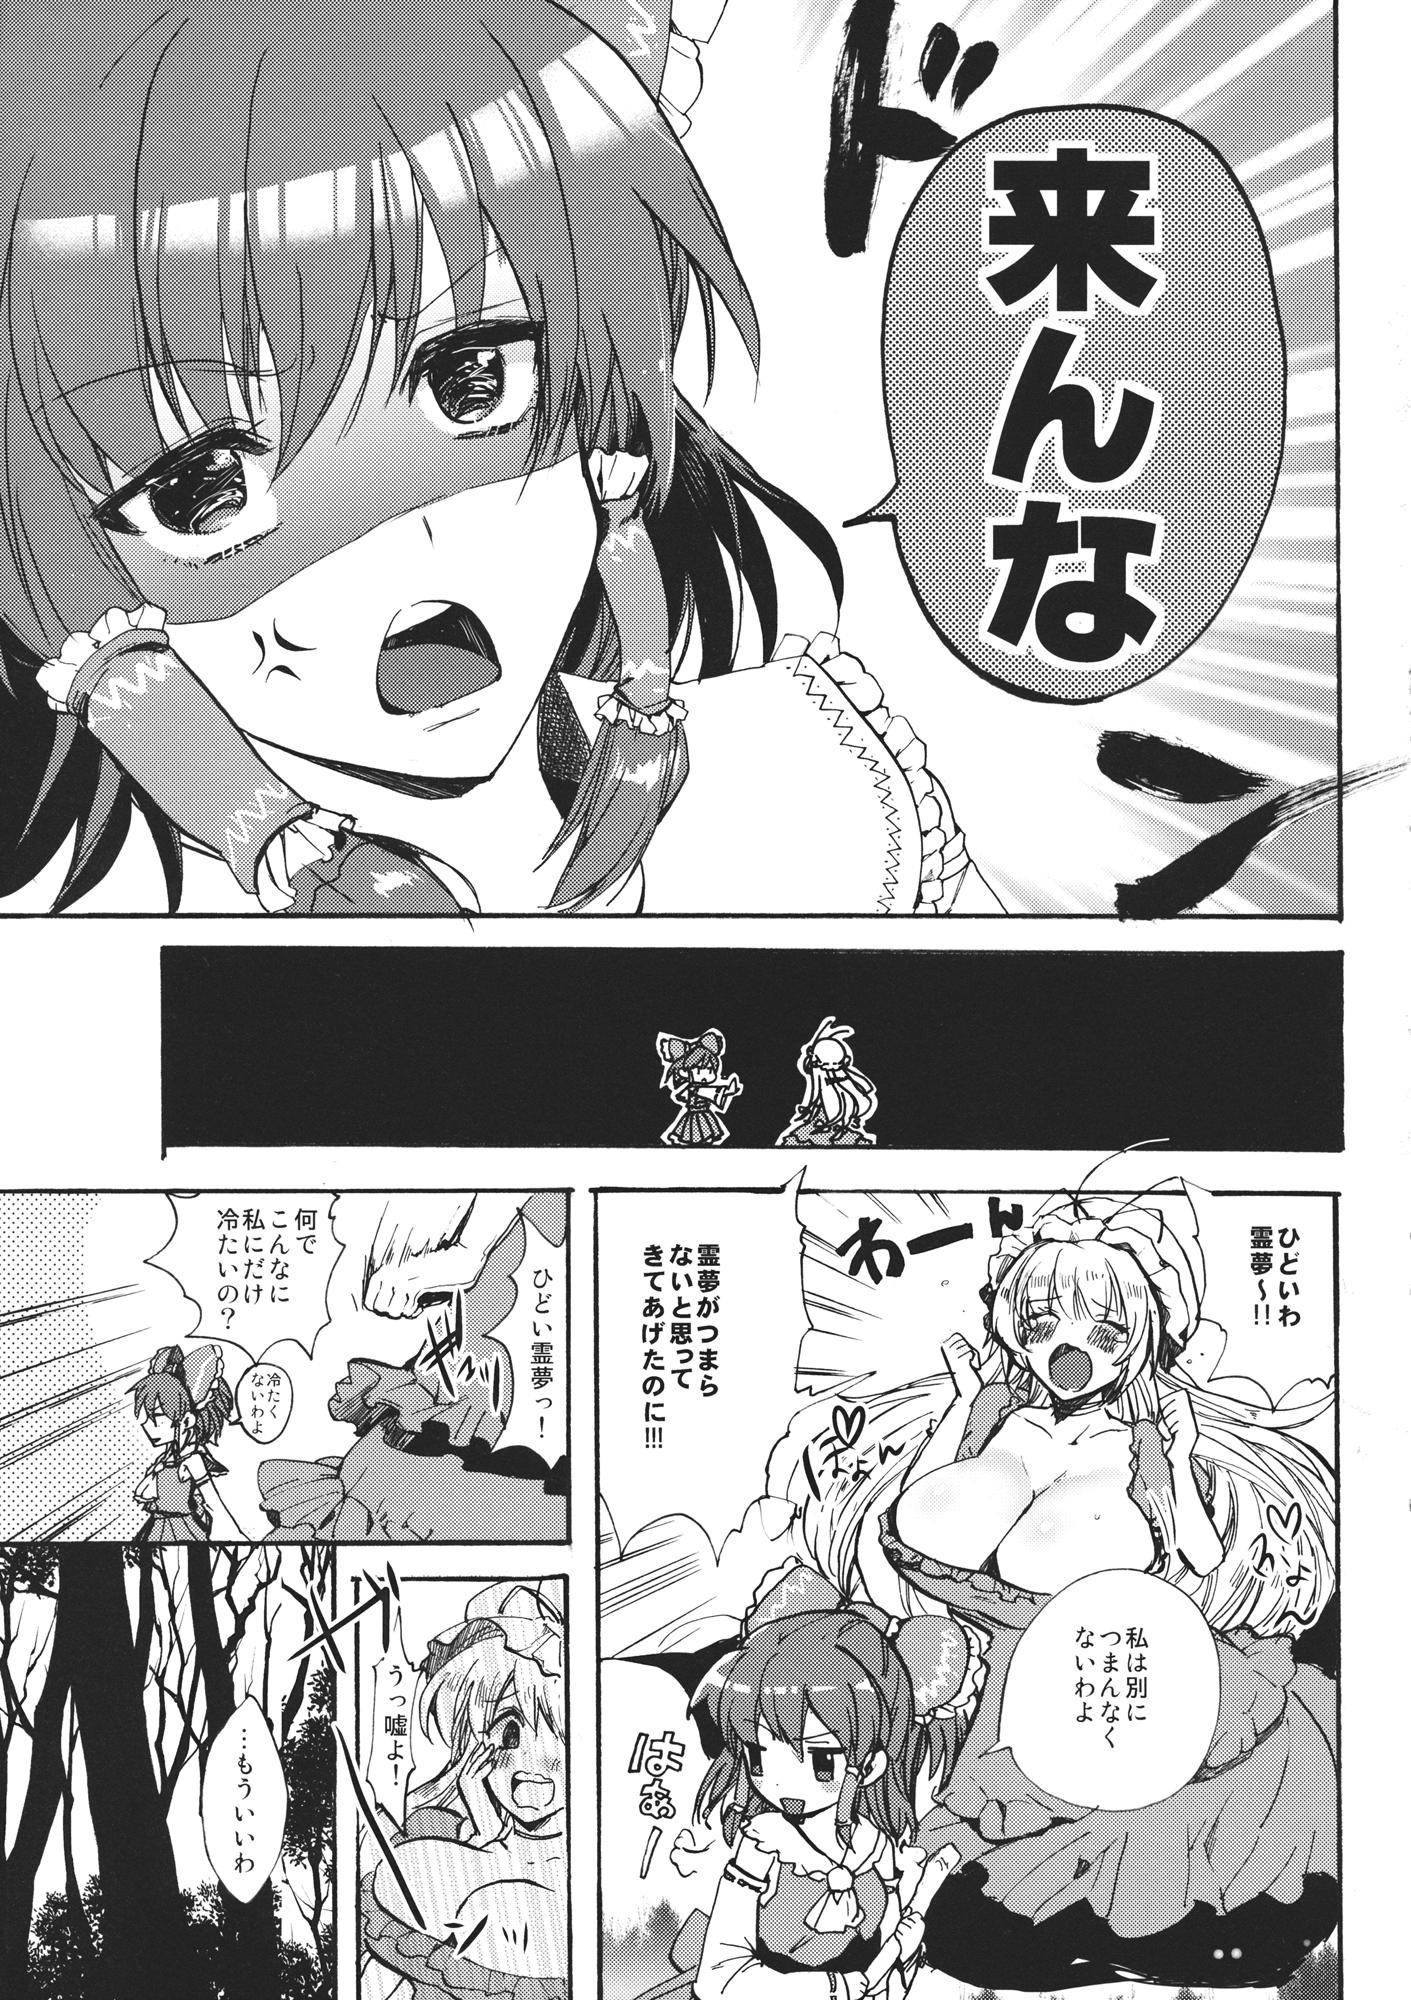 Hot Chicks Fucking Watashi no Reimu ga Konnani Tsumetai Hazu ga nai - Touhou project Natural Boobs - Page 6